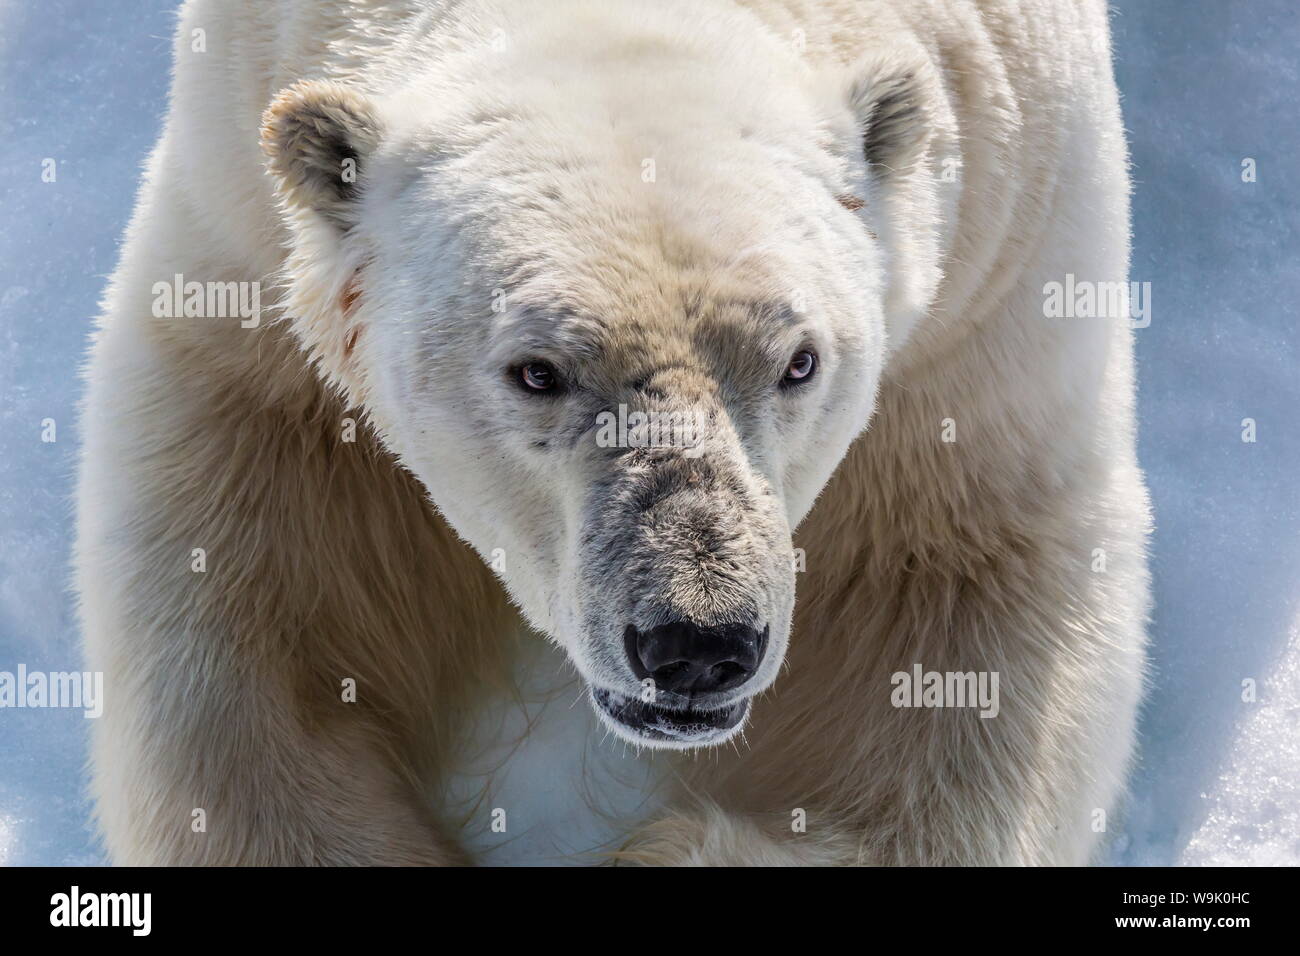 Adulto di orso polare (Ursus maritimus) in prossimità della testa di dettaglio, penisola di Cumberland, Isola Baffin, Nunavut, Canada, America del Nord Foto Stock